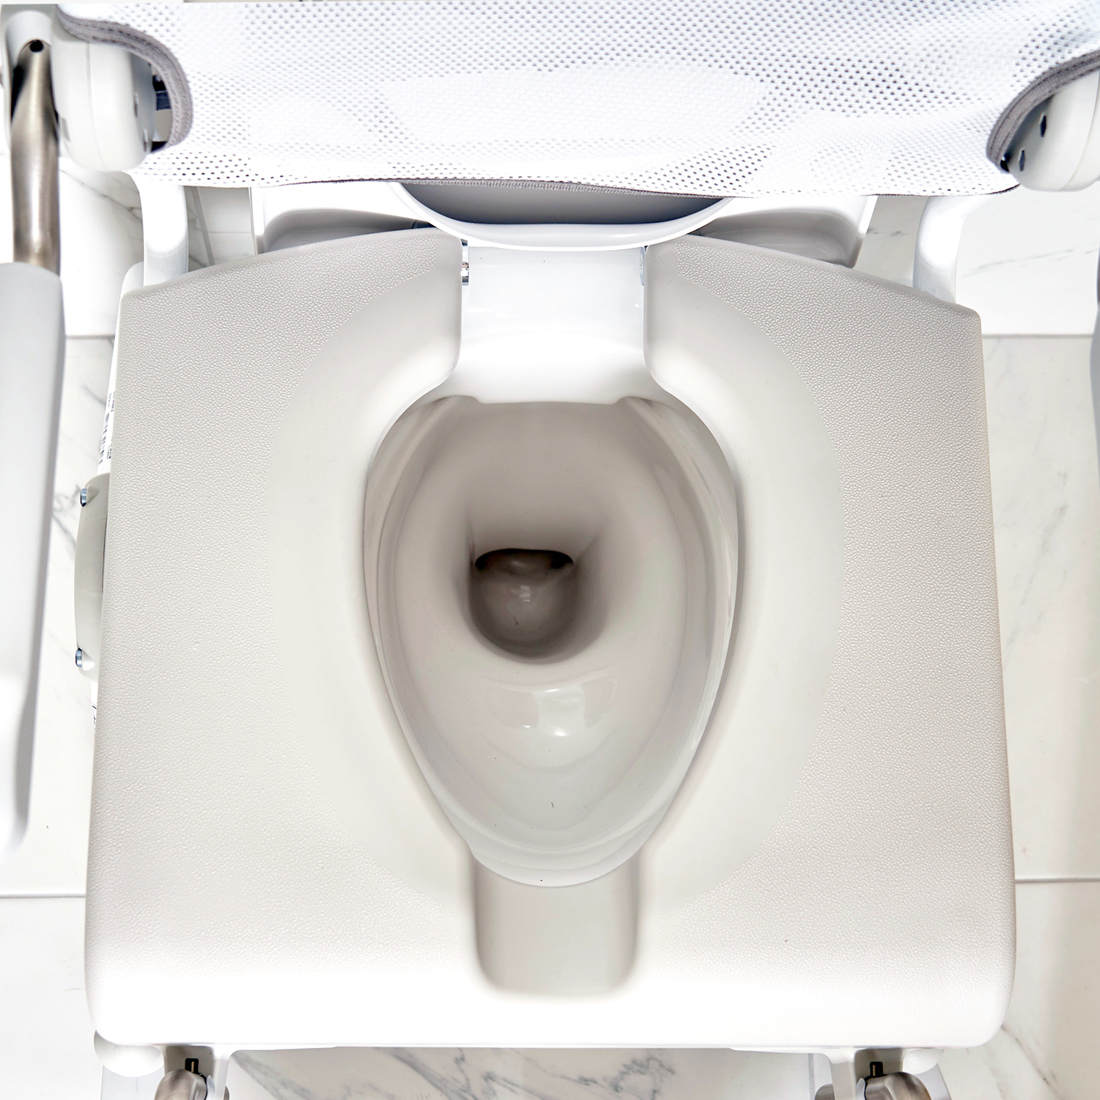 Swift Mobil Upright back over toilet.jpg